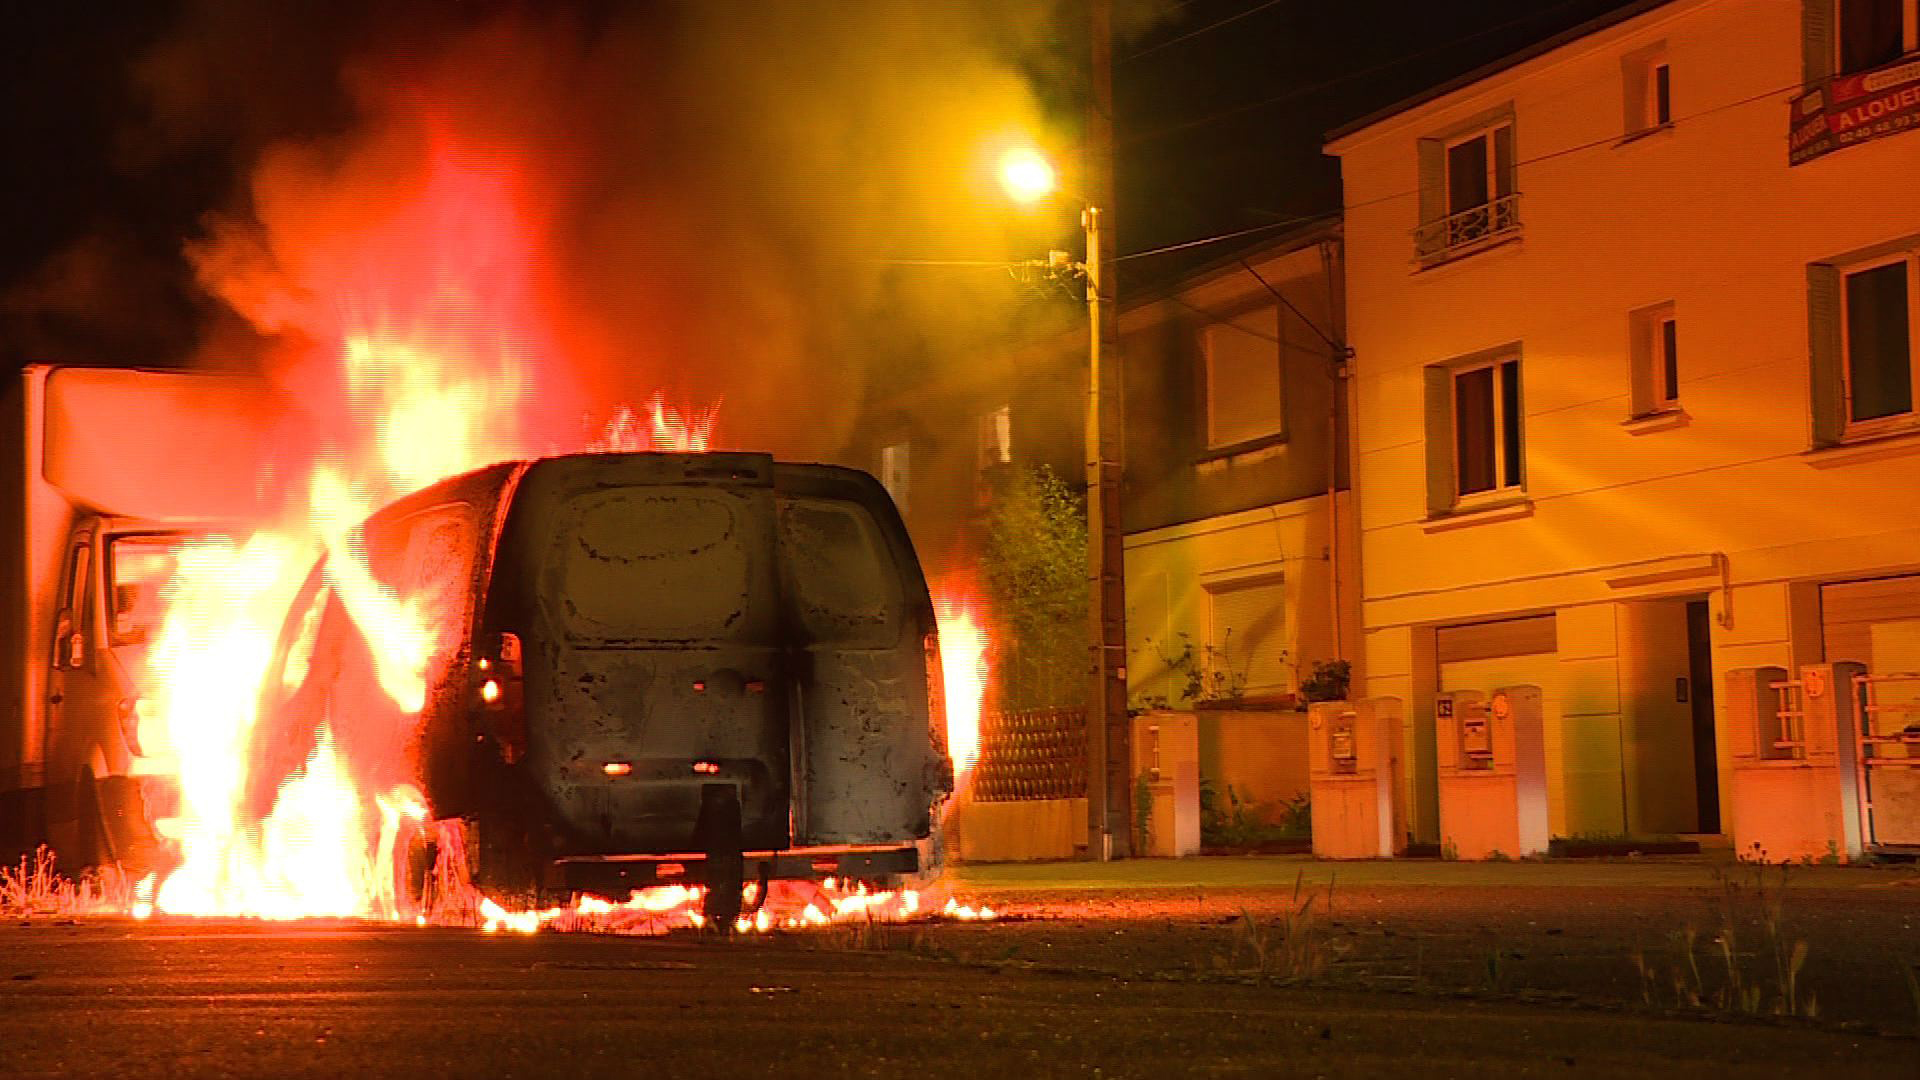 Πεδίο μάχης για τέταρτη σερί νύχτα η Ναντ – Βόμβες μολότοφ και φωτιά σε επτά οχήματα